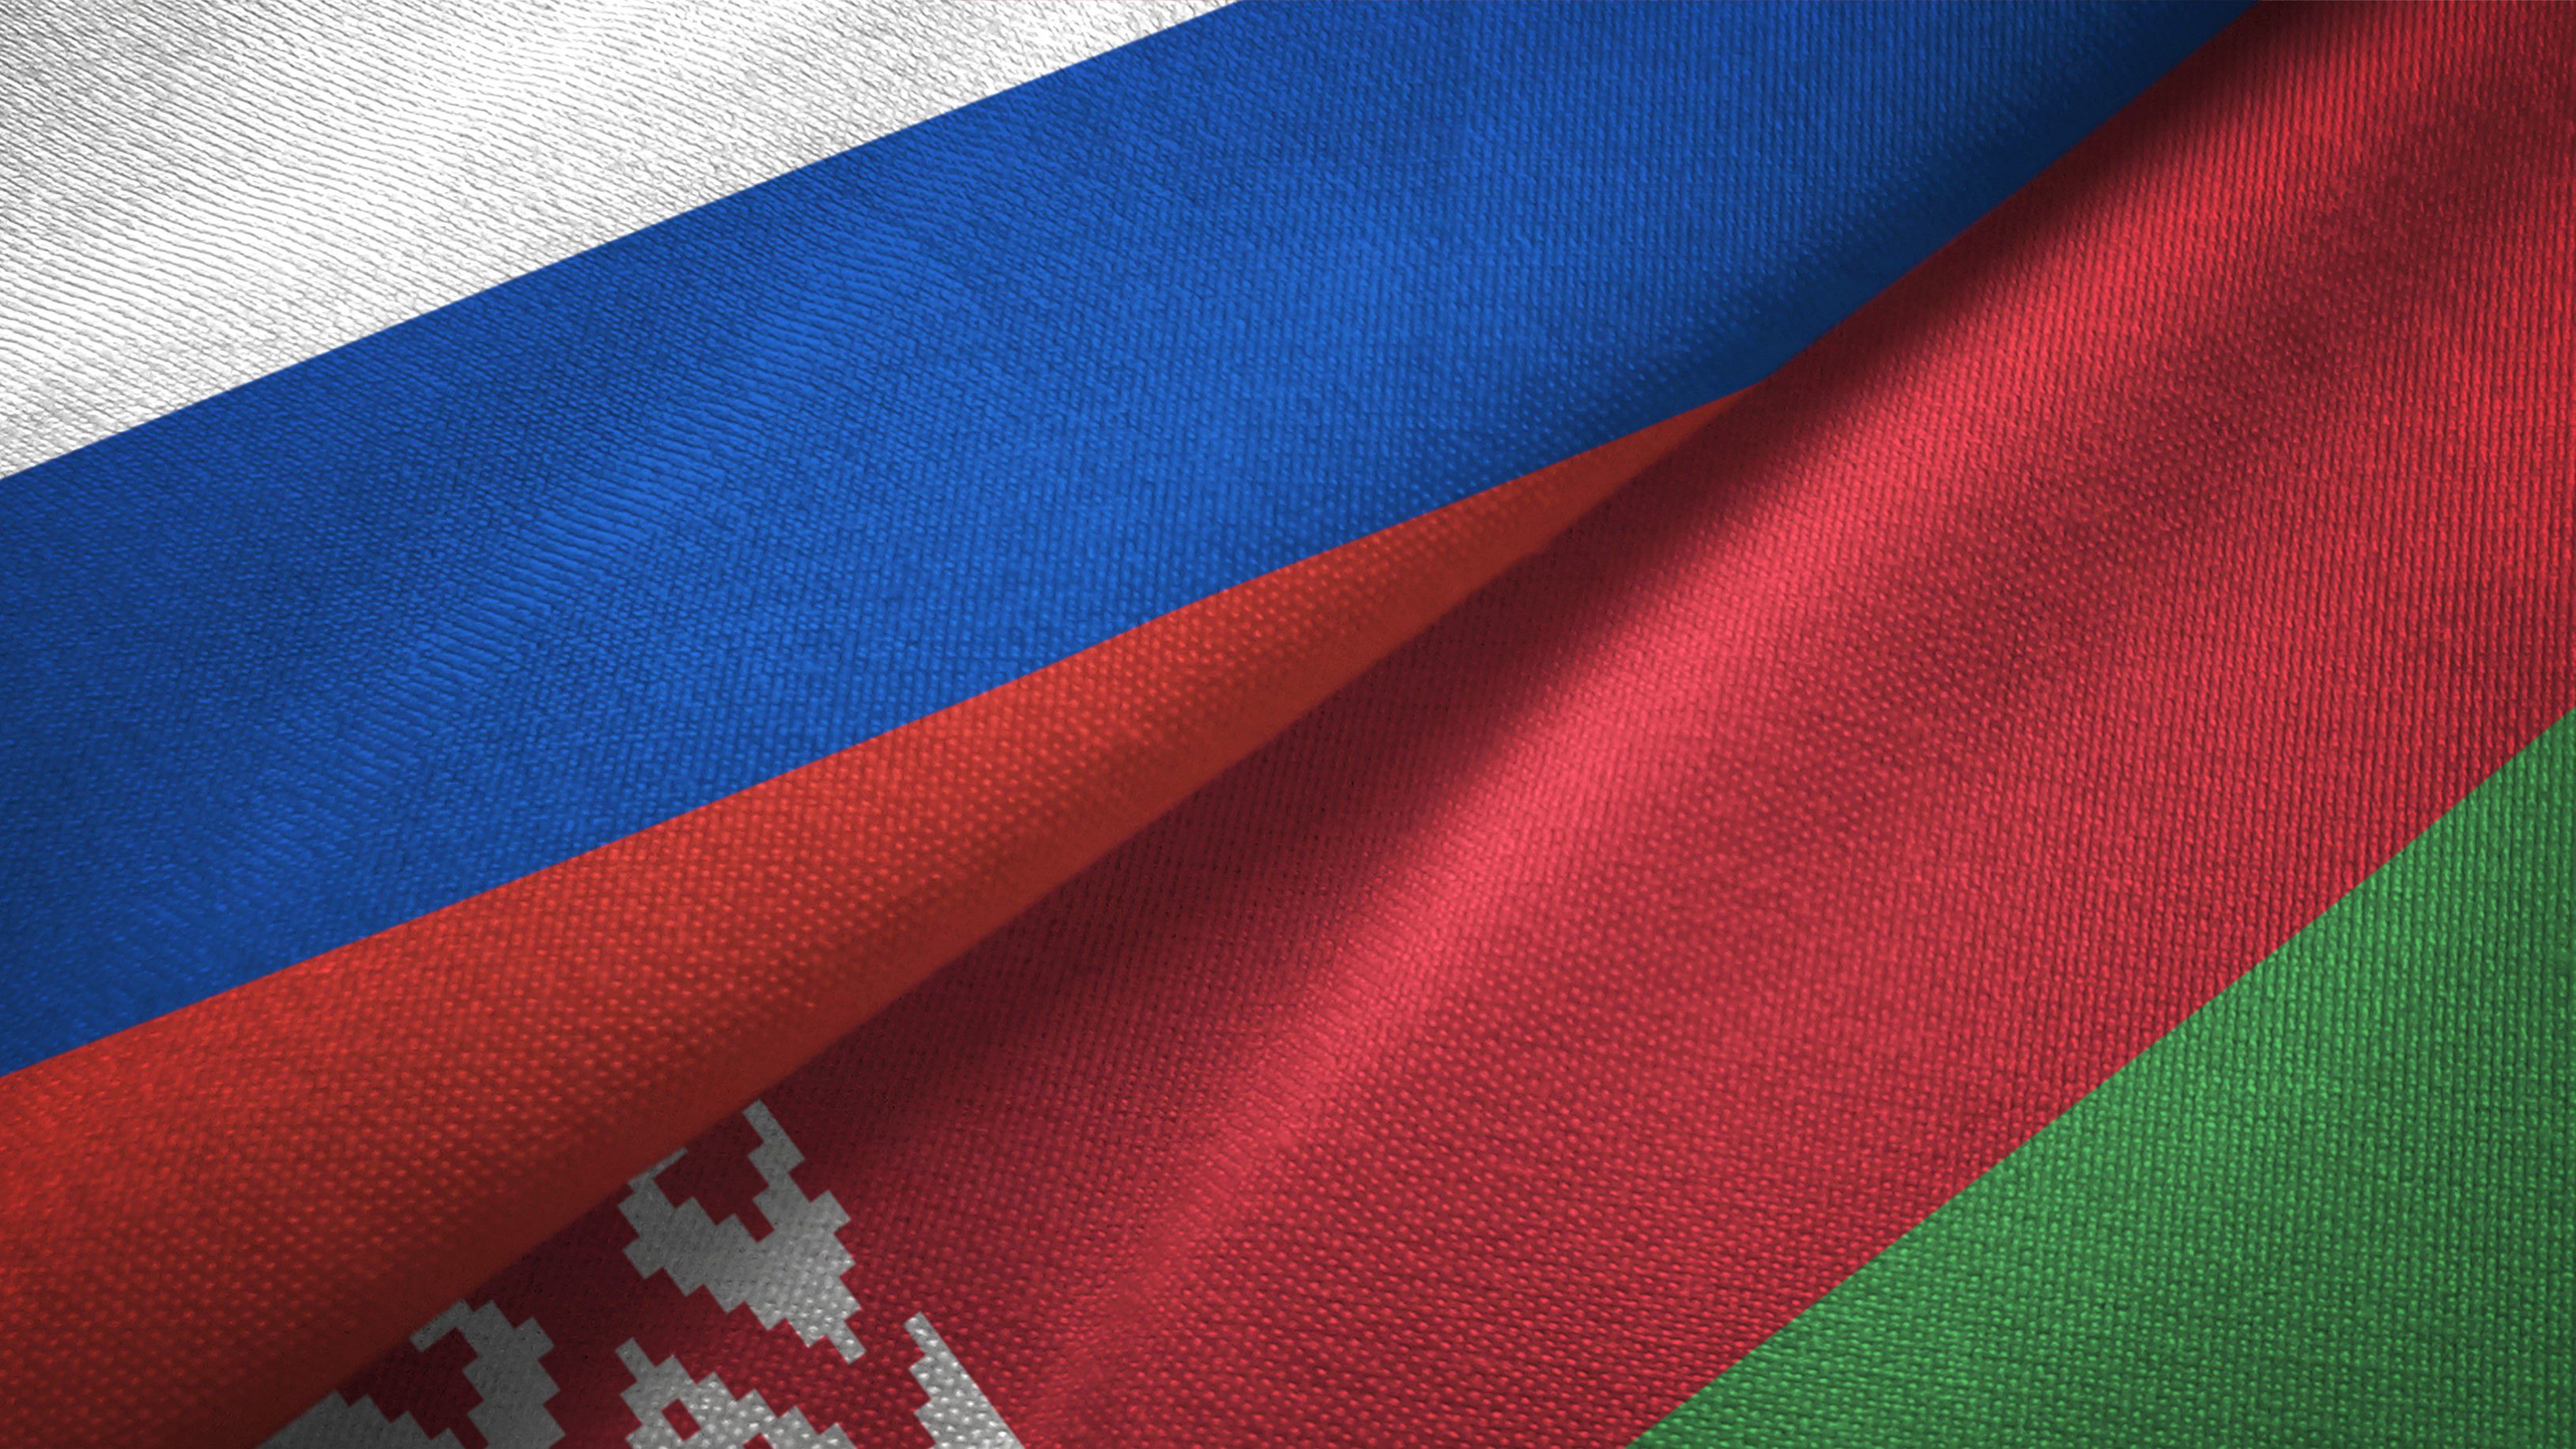 Párizs 2024: huszonöt orosz és fehérorosz sportoló kapott indulási jogot